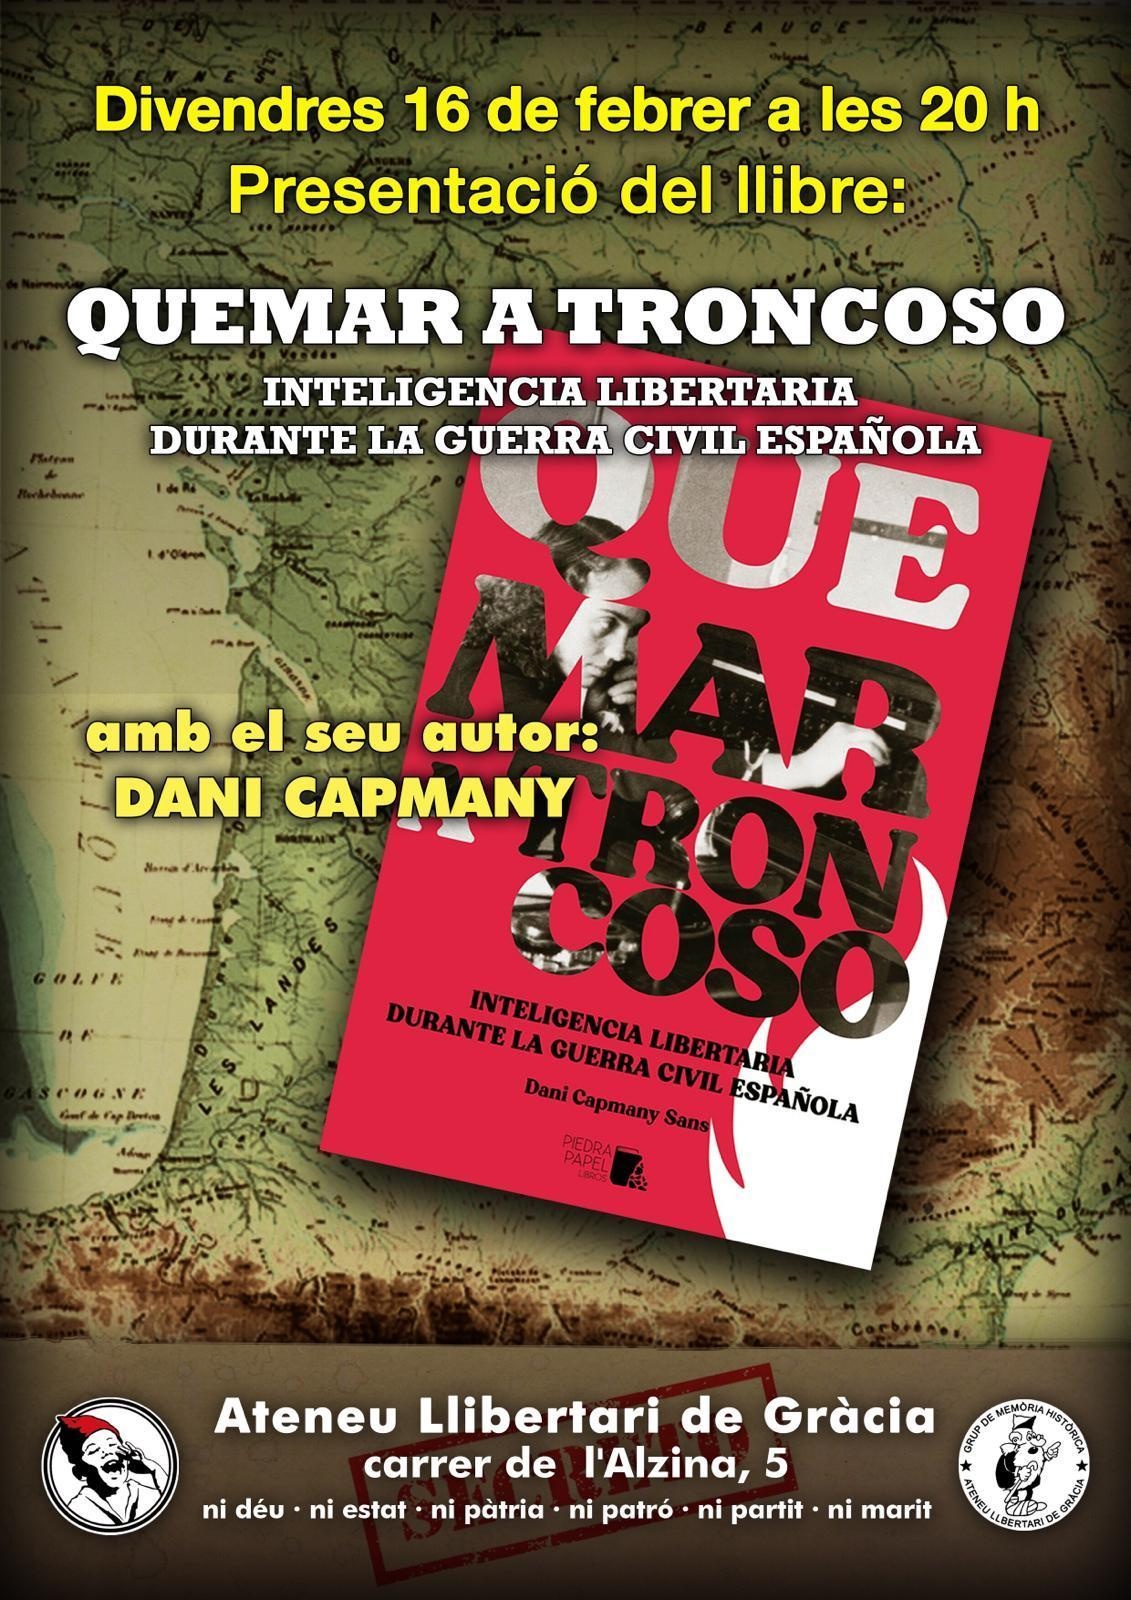 Presentació del llibre QUEMAR A TRONCOSO, Inteligencia libertaria durante la guerra civil española